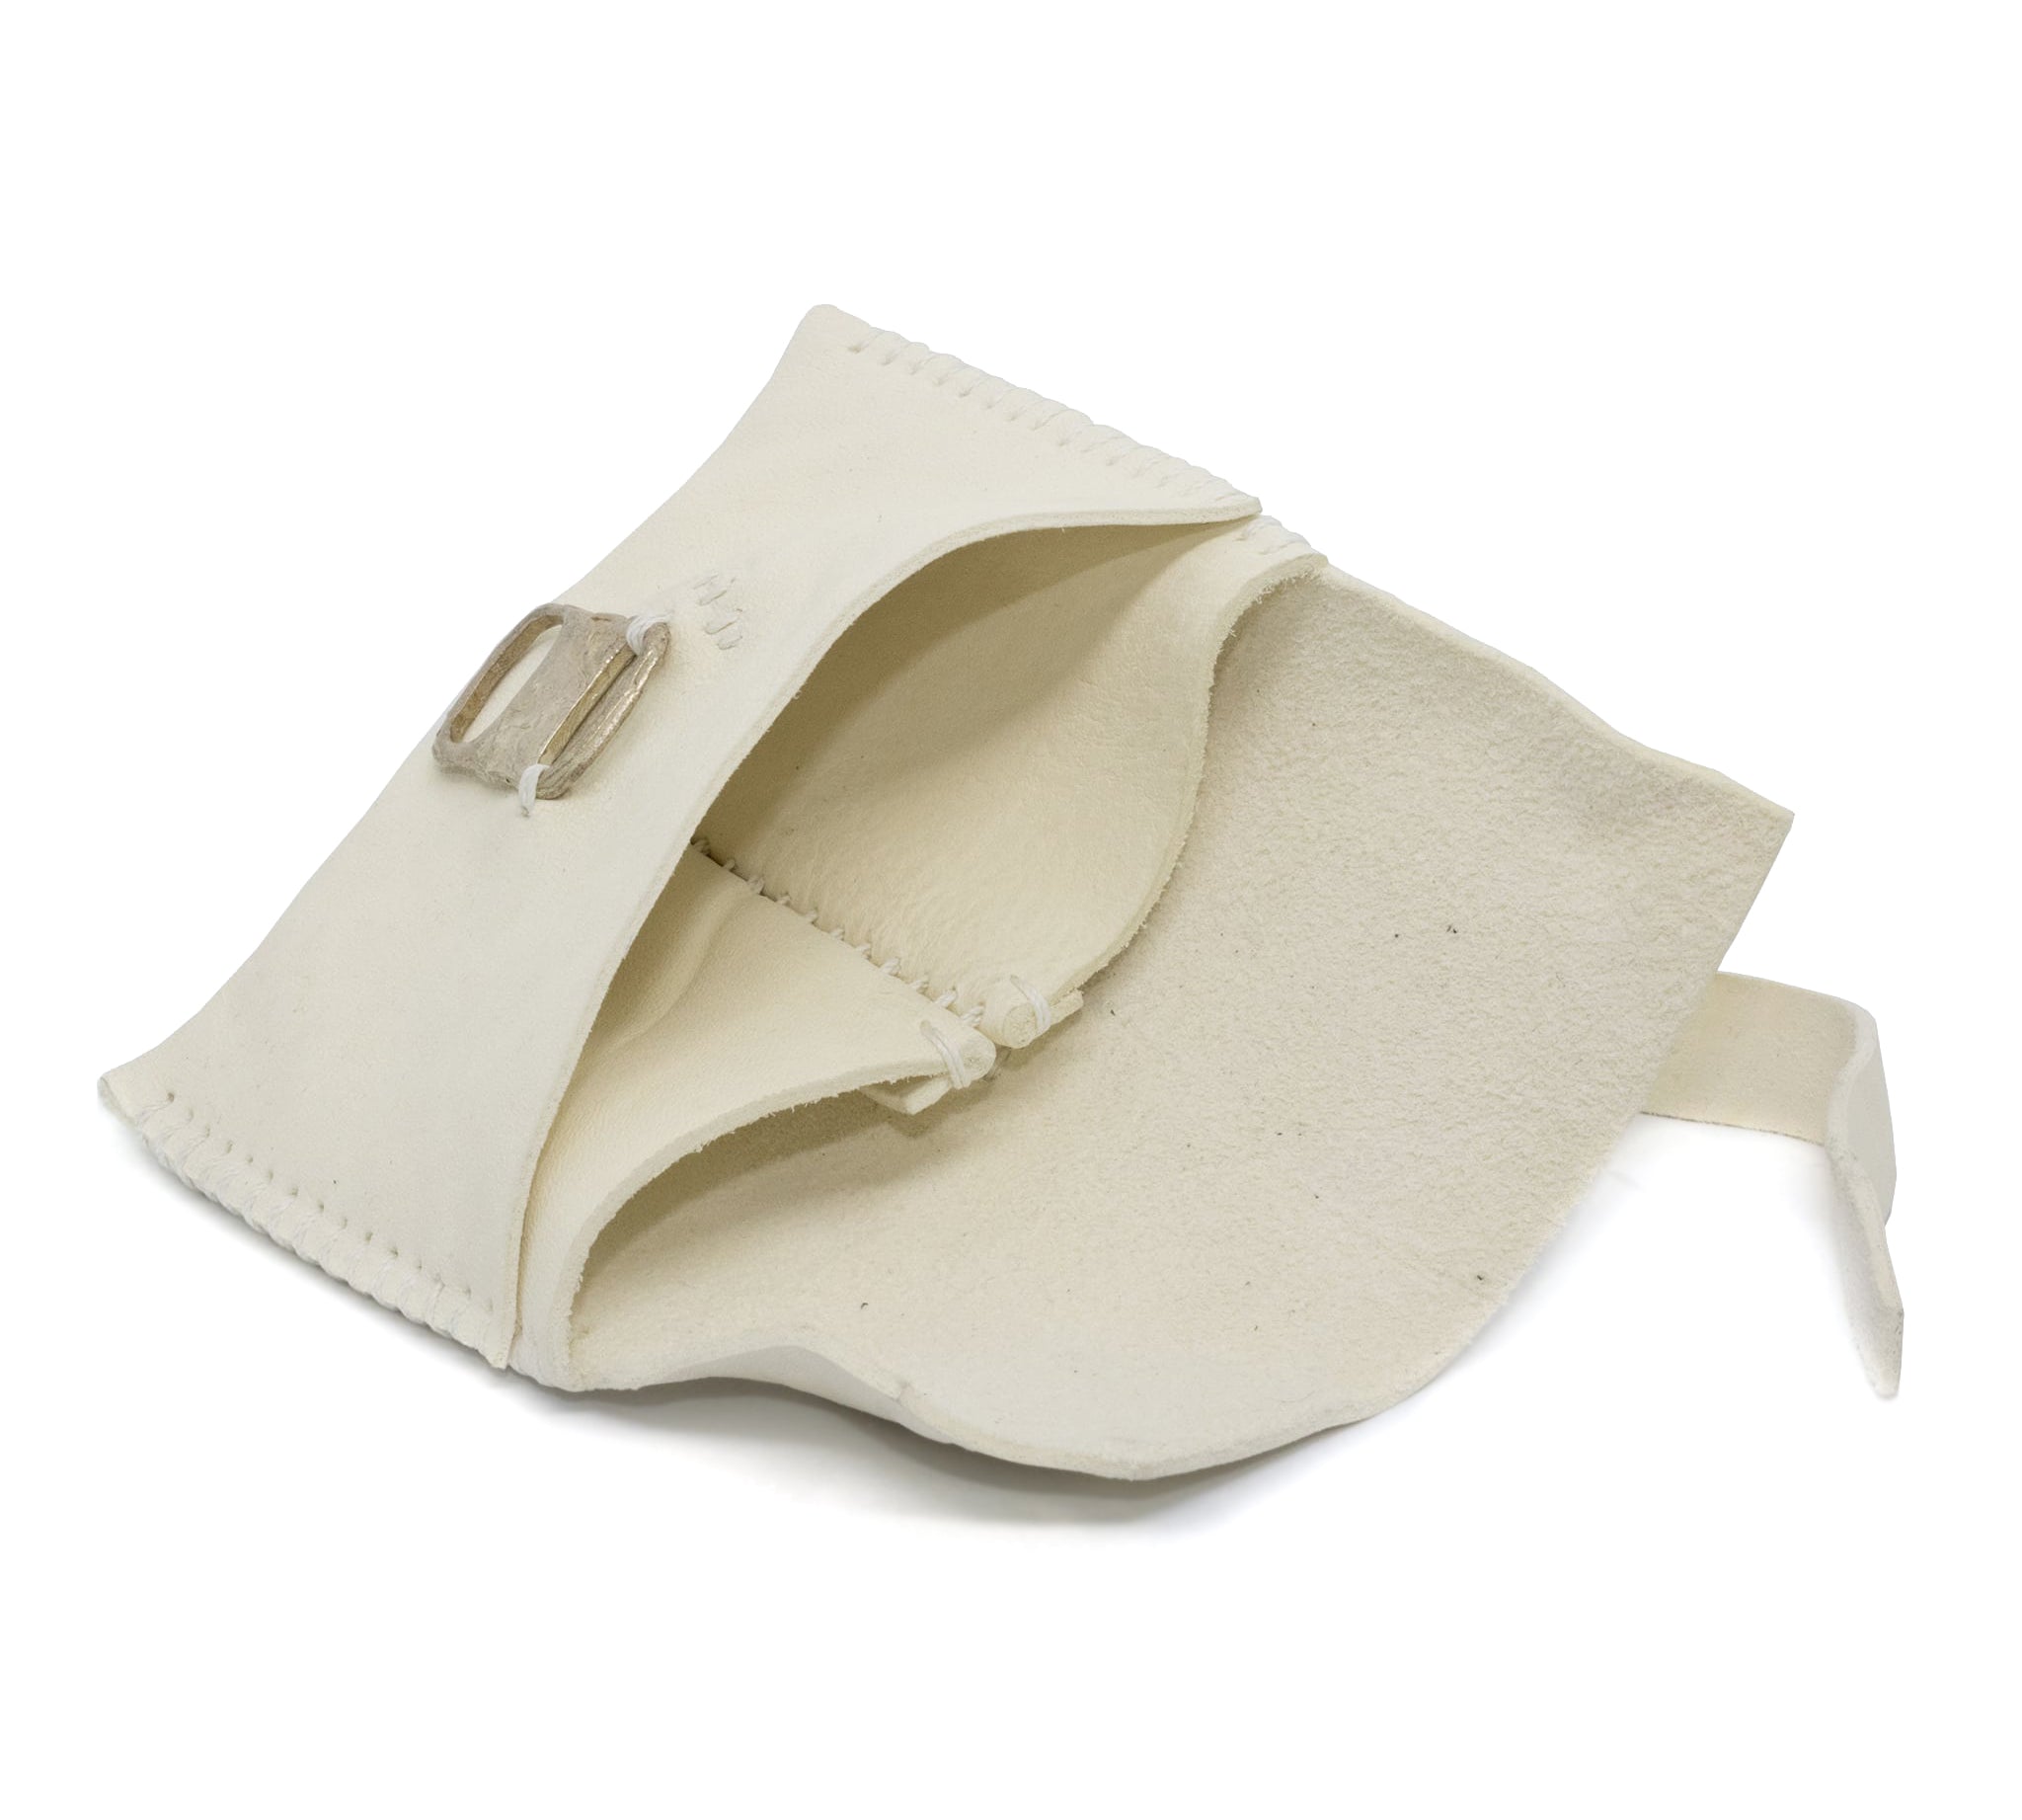 atelier skn | albino culatta leather one piece card case